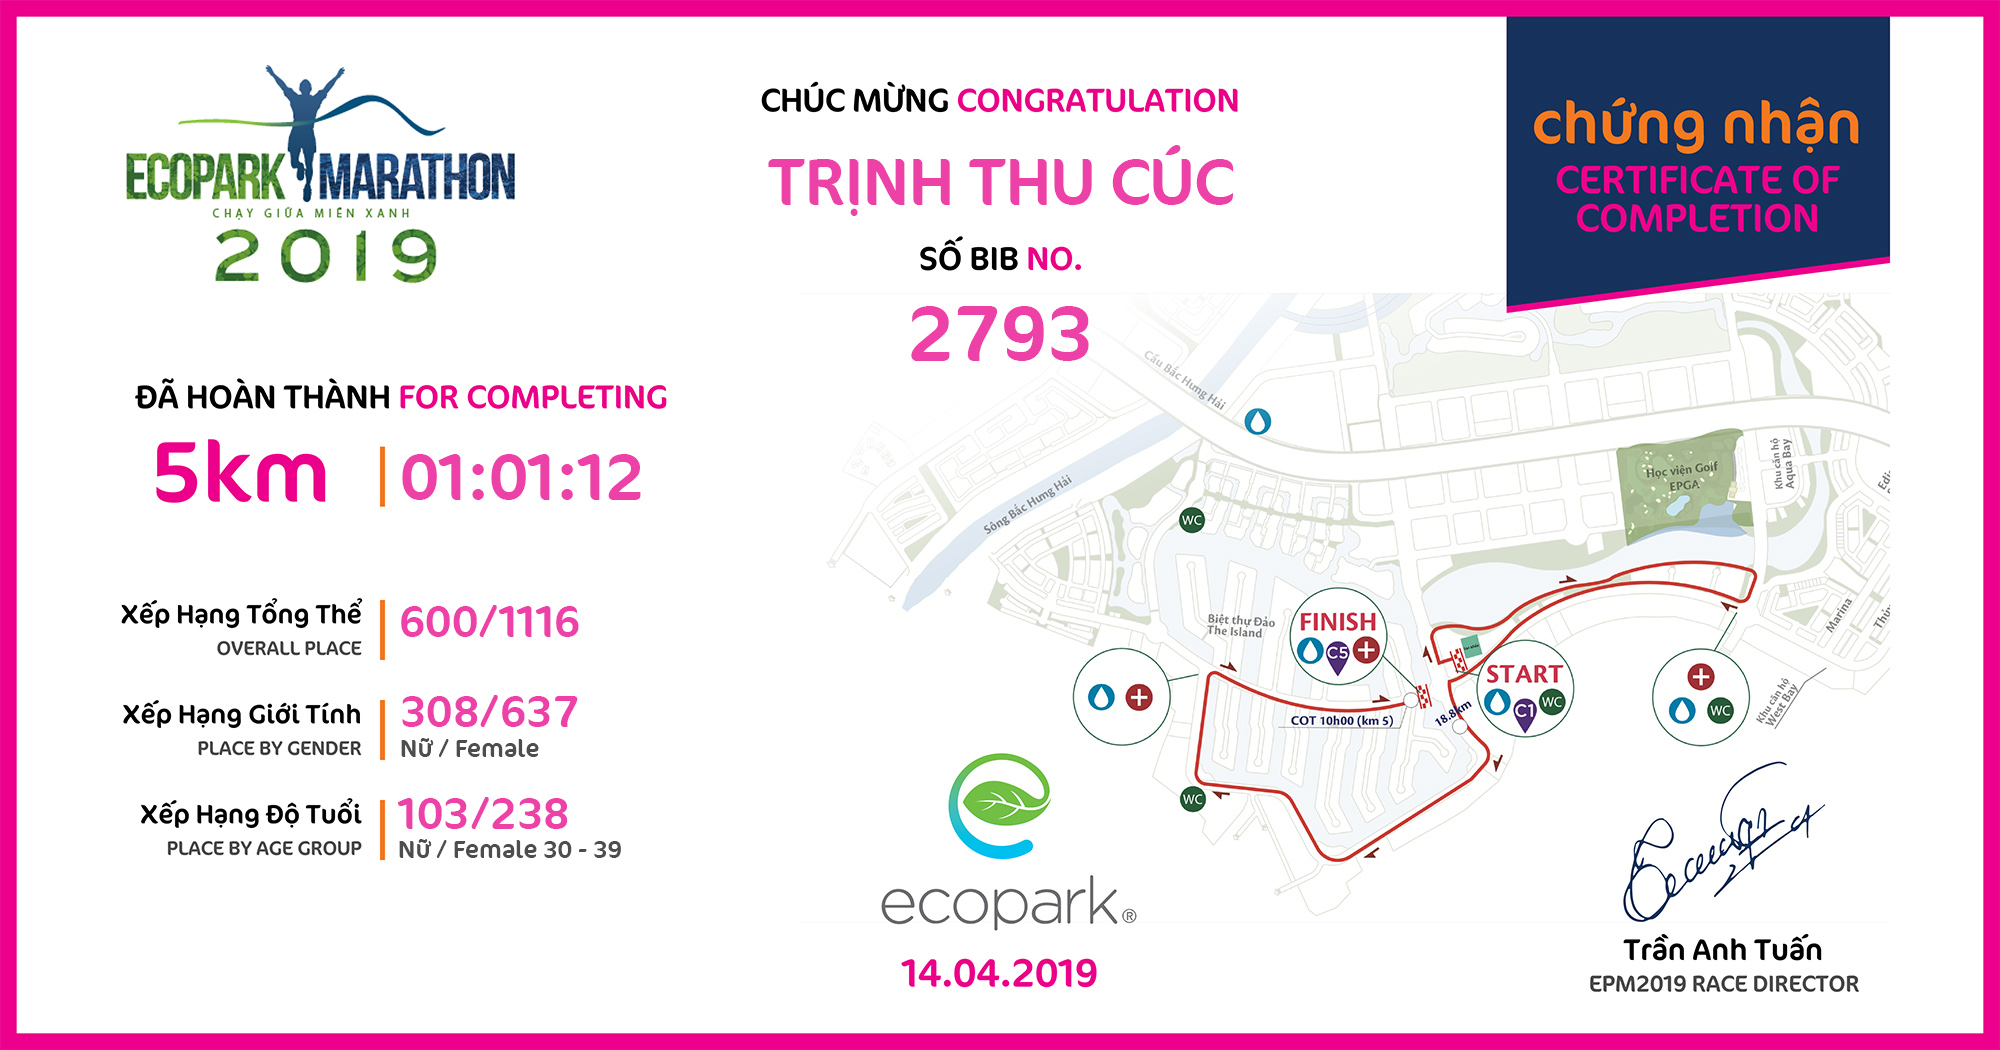 2793 - Trịnh Thu Cúc